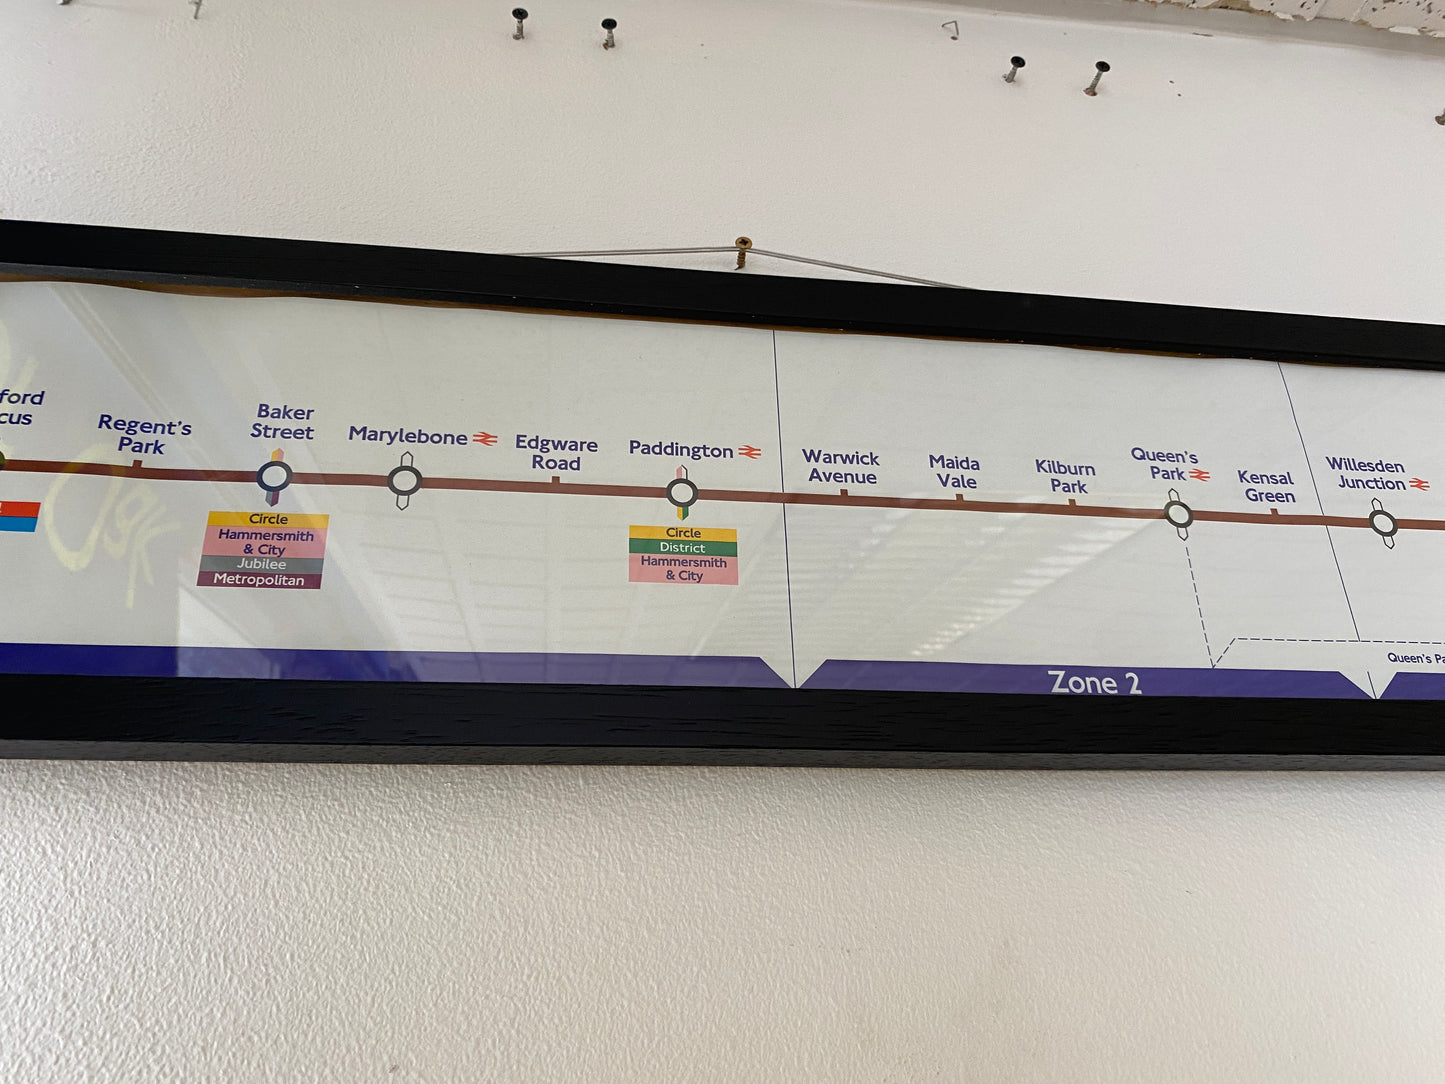 London Transport Bakerloo Line Route Map (Framed)